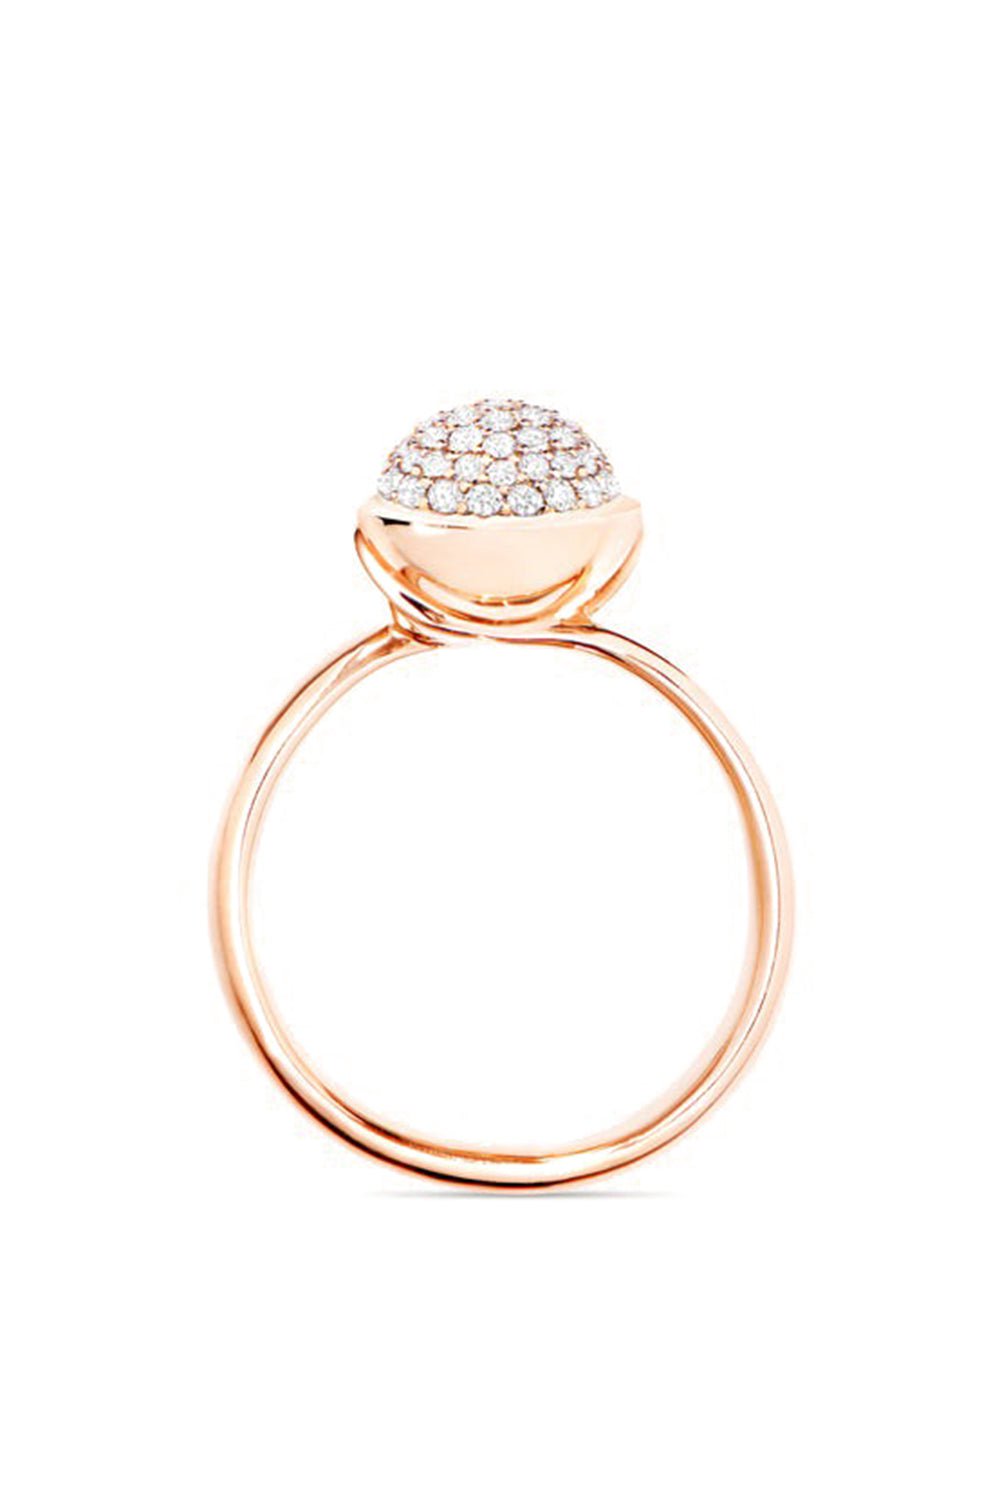 TAMARA COMOLLI-Small Pavé Diamond Bouton Ring-ROSE GOLD